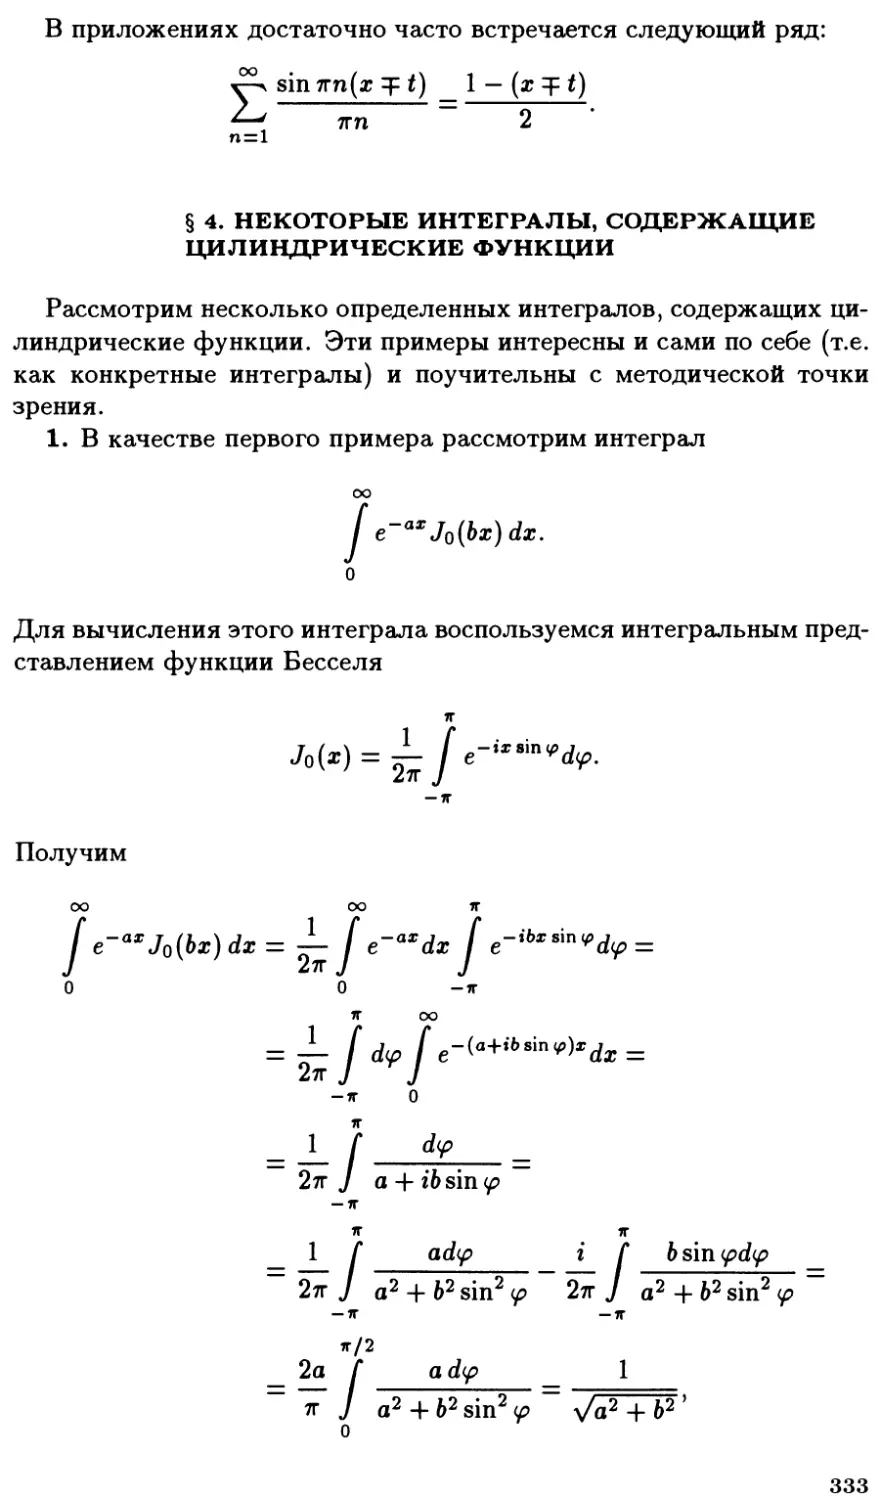 §4. Некоторые интегралы, содержащие цилиндрические функции